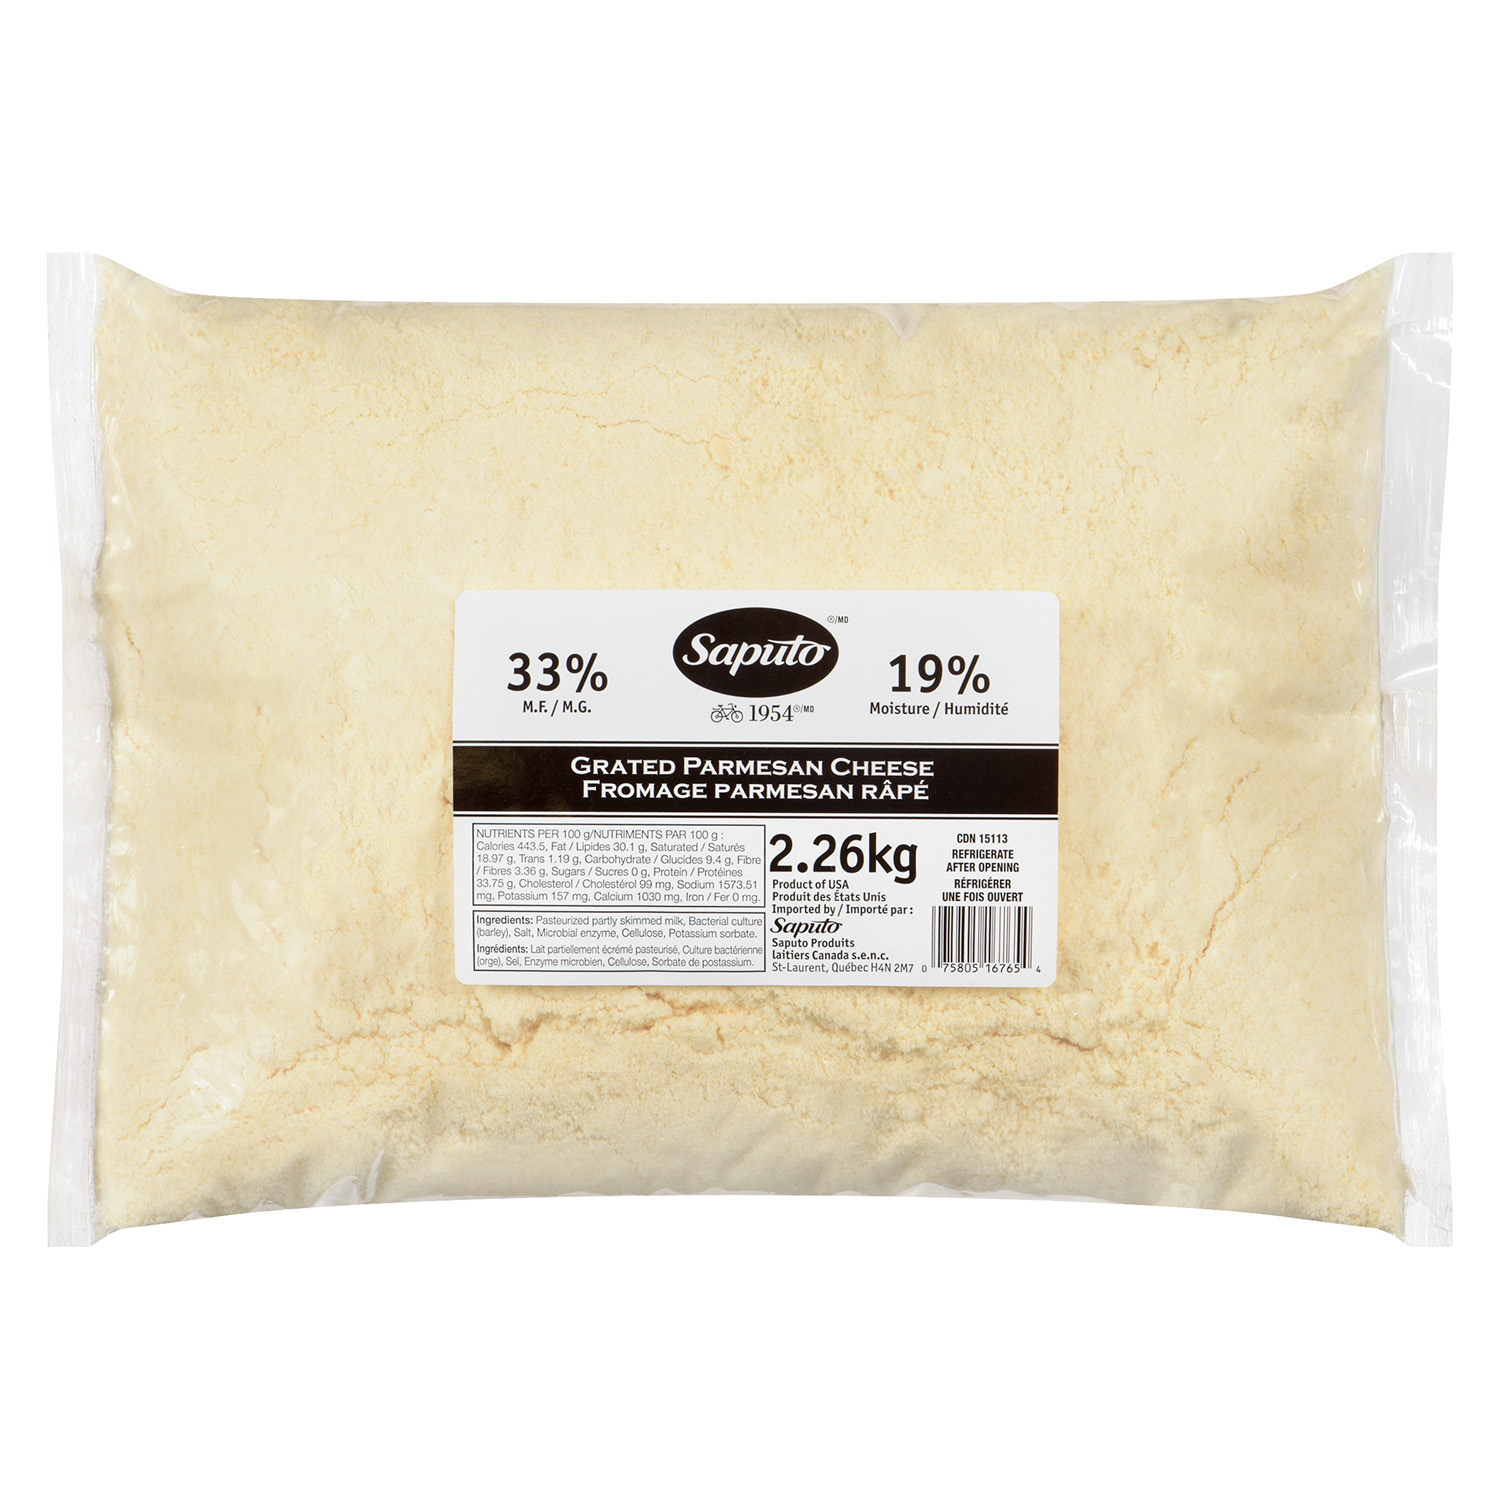 fromage parmesan rape 2.26kg